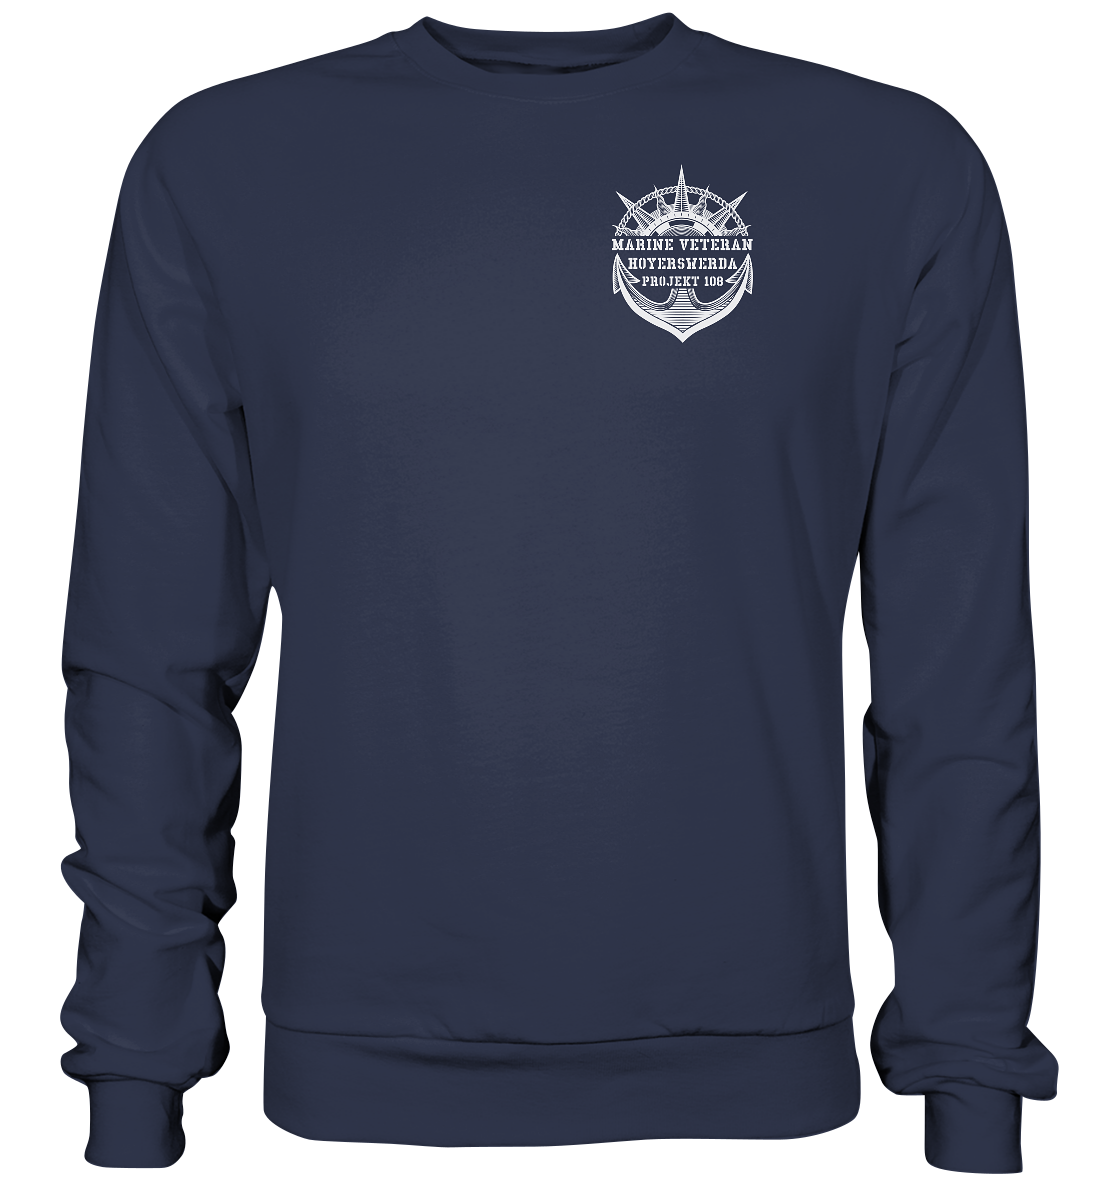 Projekt 108 HOYERSWERDA Marine Veteran Brustlogo - Premium Sweatshirt